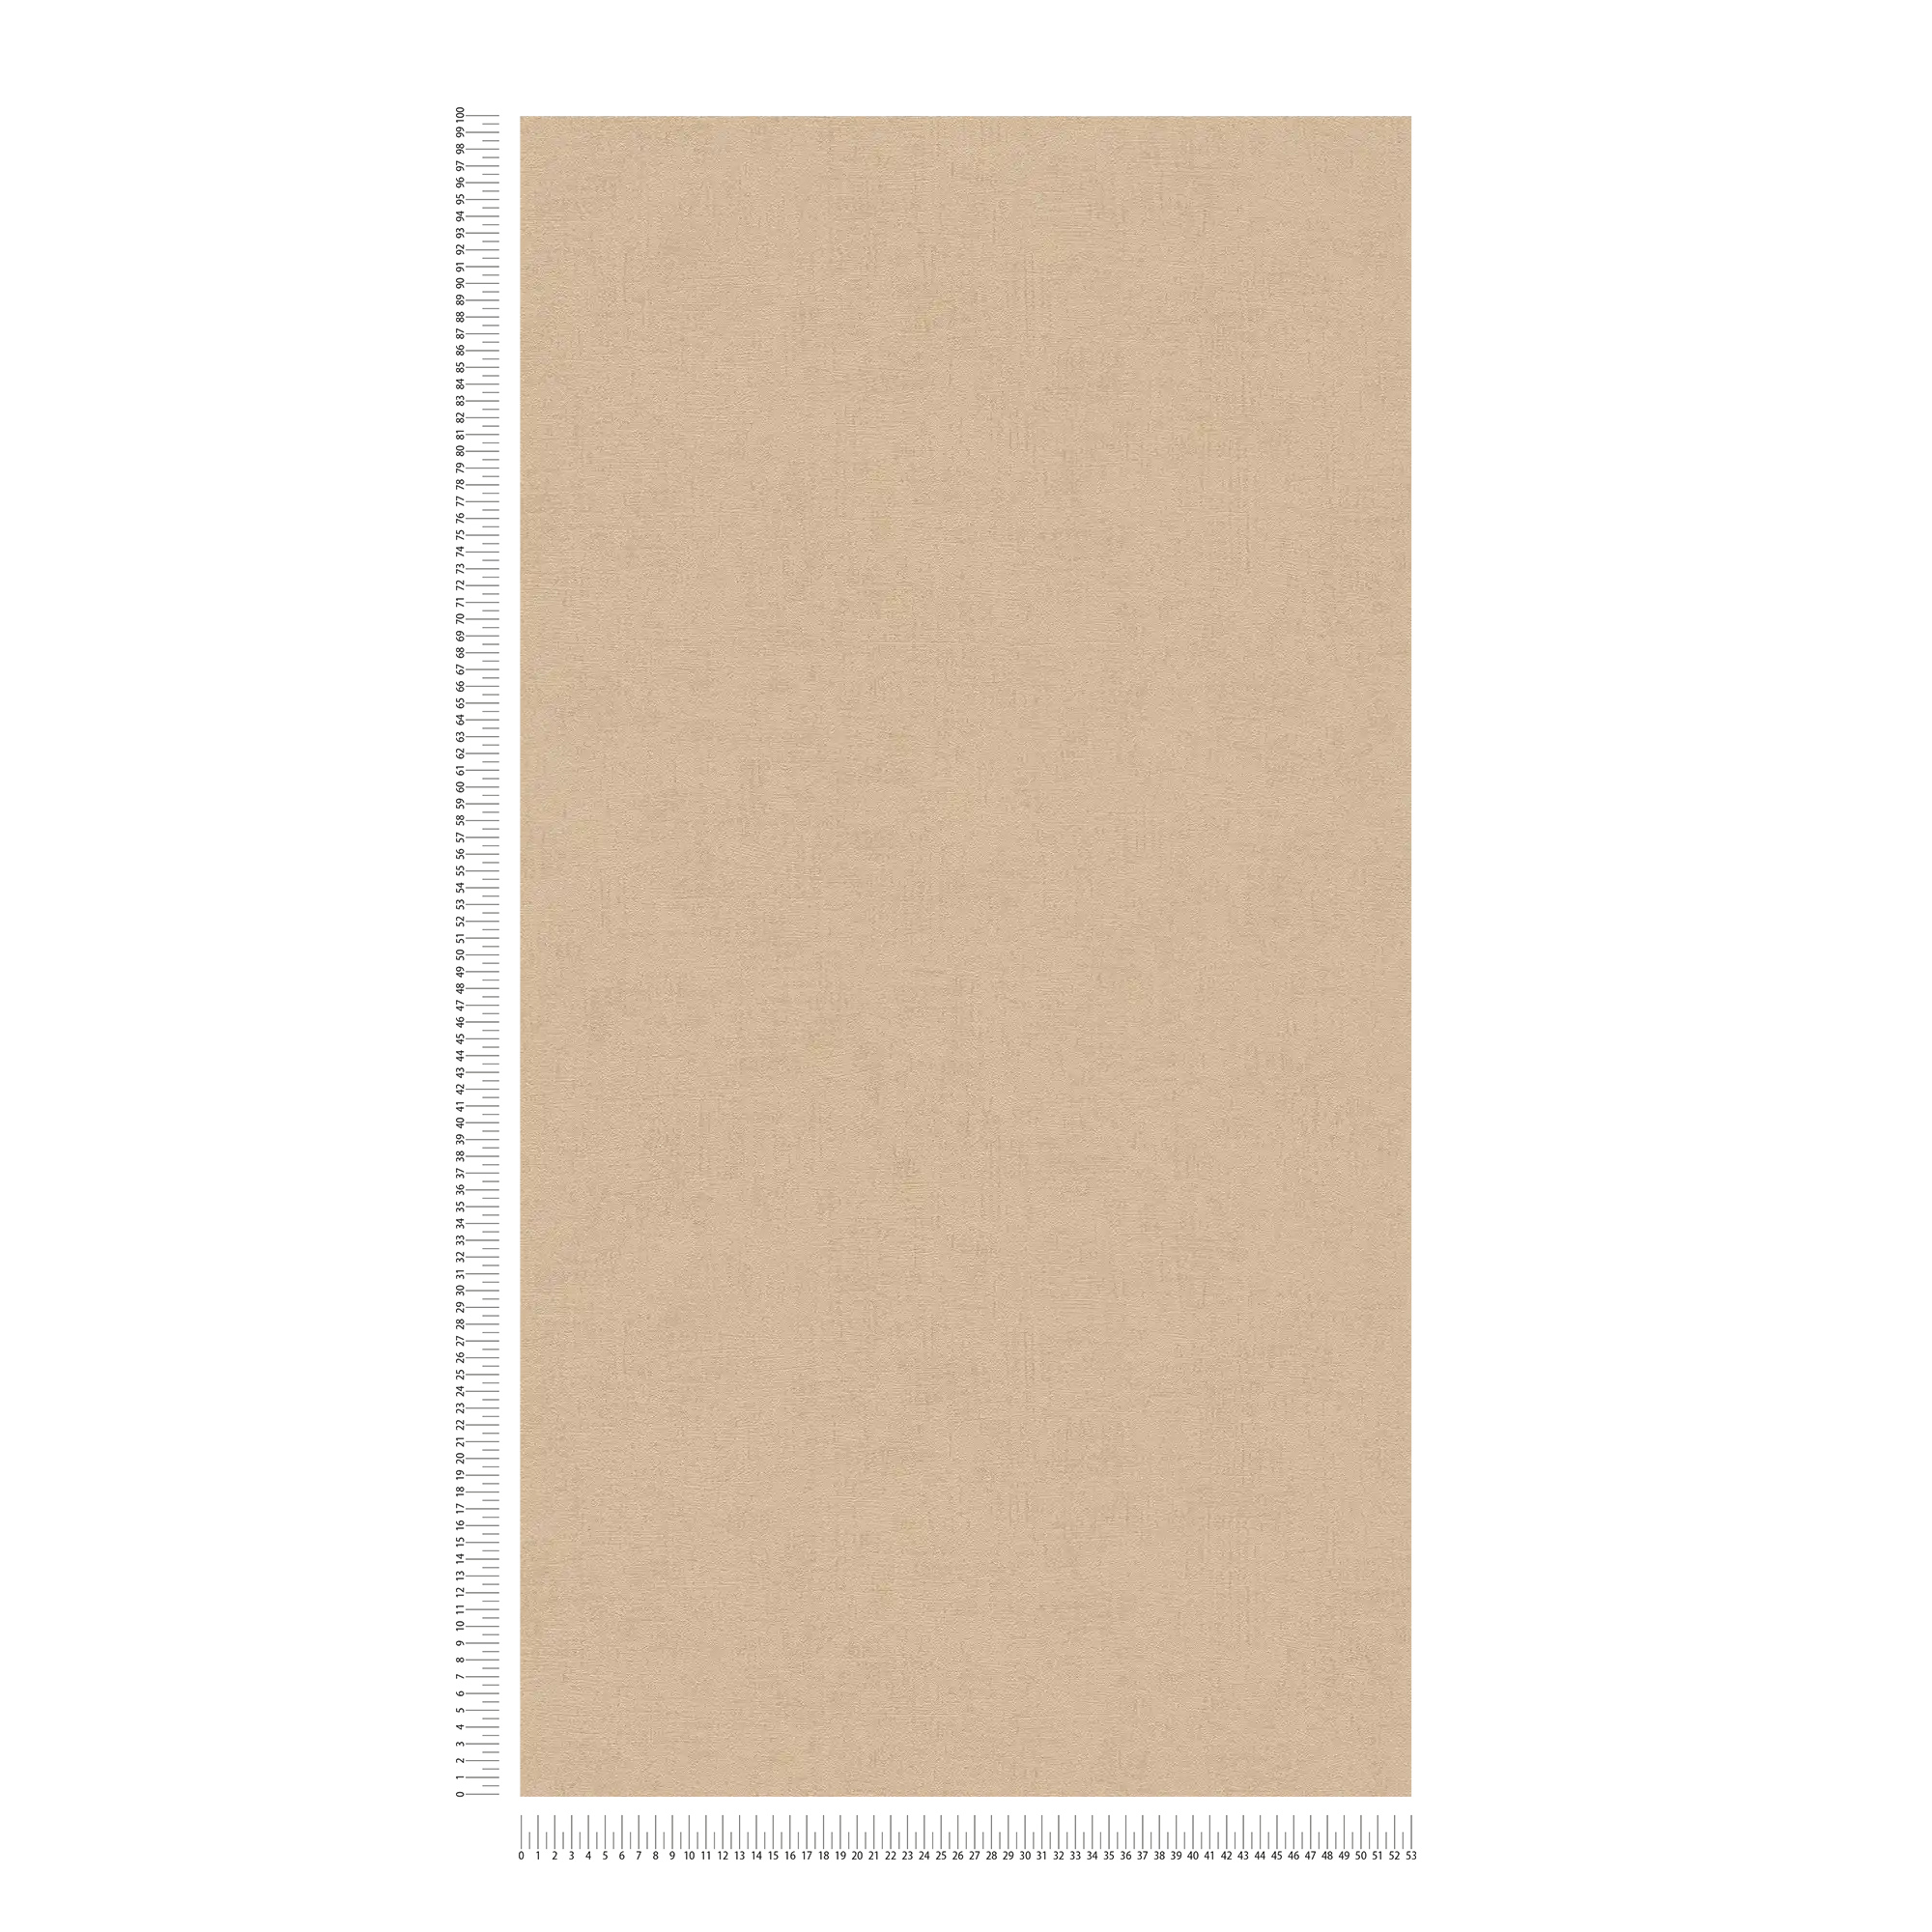             papel pintado marrón claro caramelo con estructura y efecto brillo - marrón, metálico
        